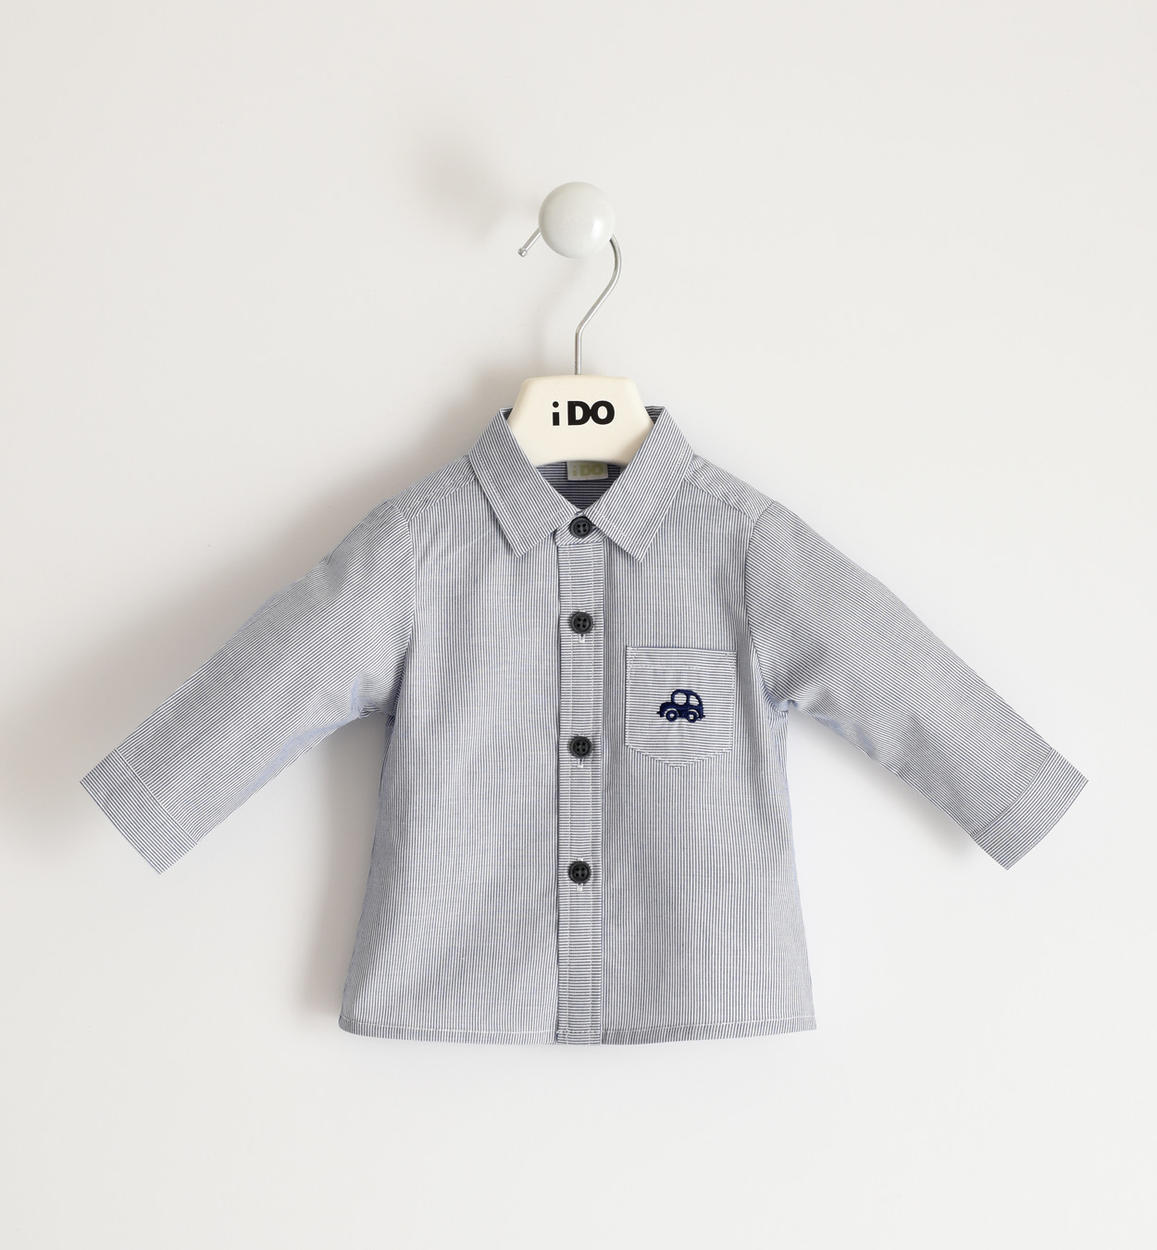 Camicia 100% cotone con stampa macchinina BLU iDO